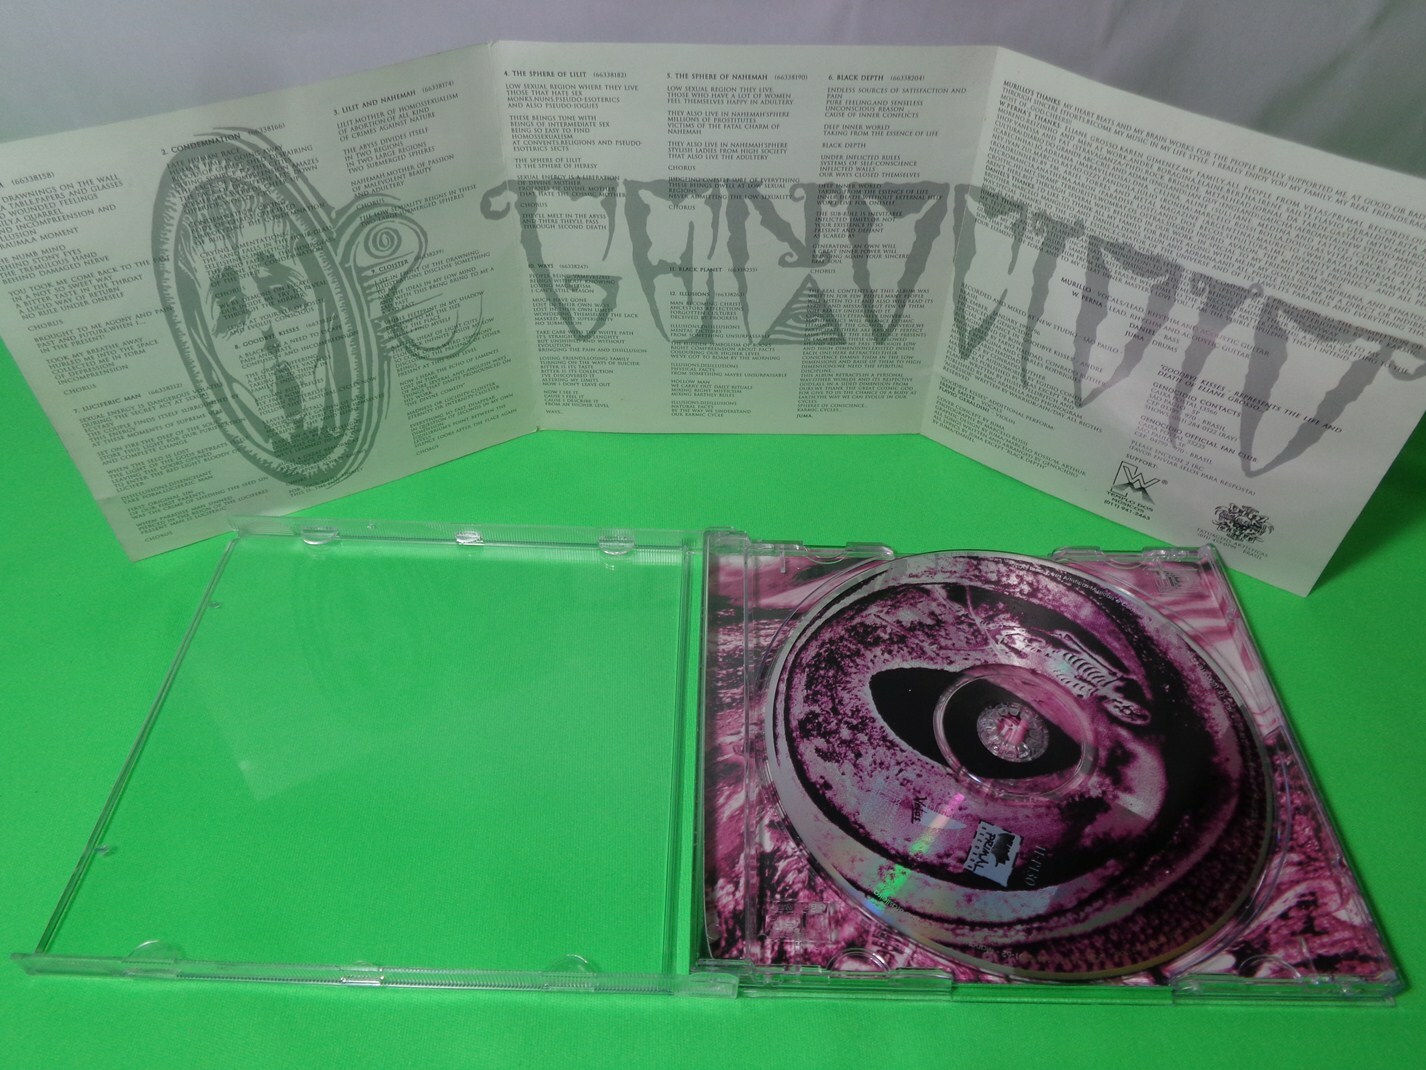 CD - Genocidio - Posthumous